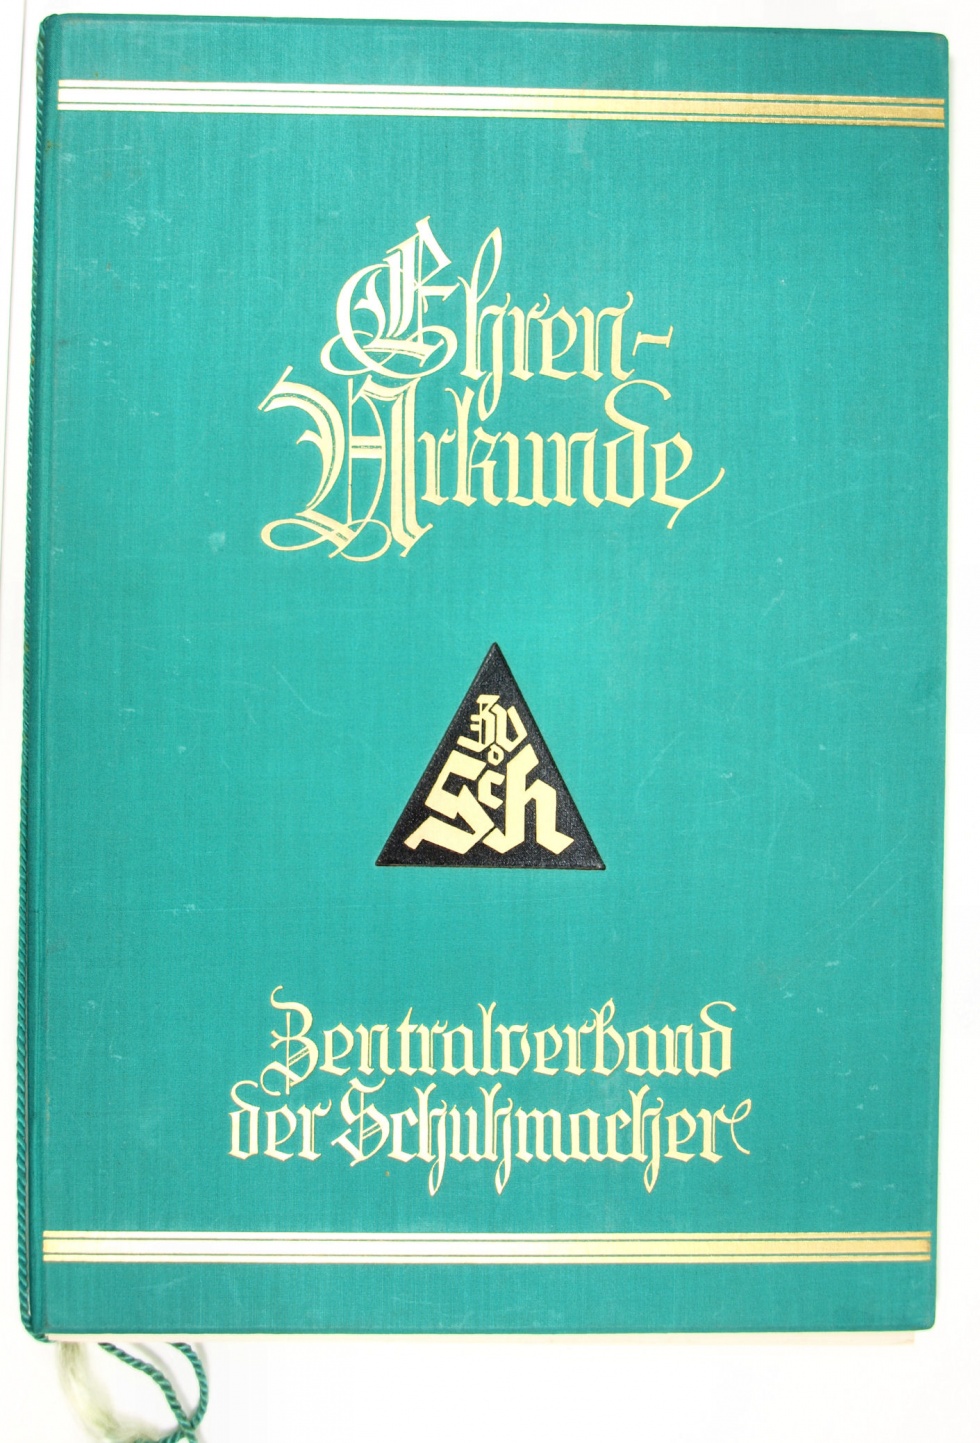 Ehrenurkunde für ein Mitglied des Zentralverbandes der Schuhmacher, 25 Jahre, Nürnberg 22. April 1931 (Museum Weißenfels - Schloss Neu-Augustusburg CC BY-NC-SA)